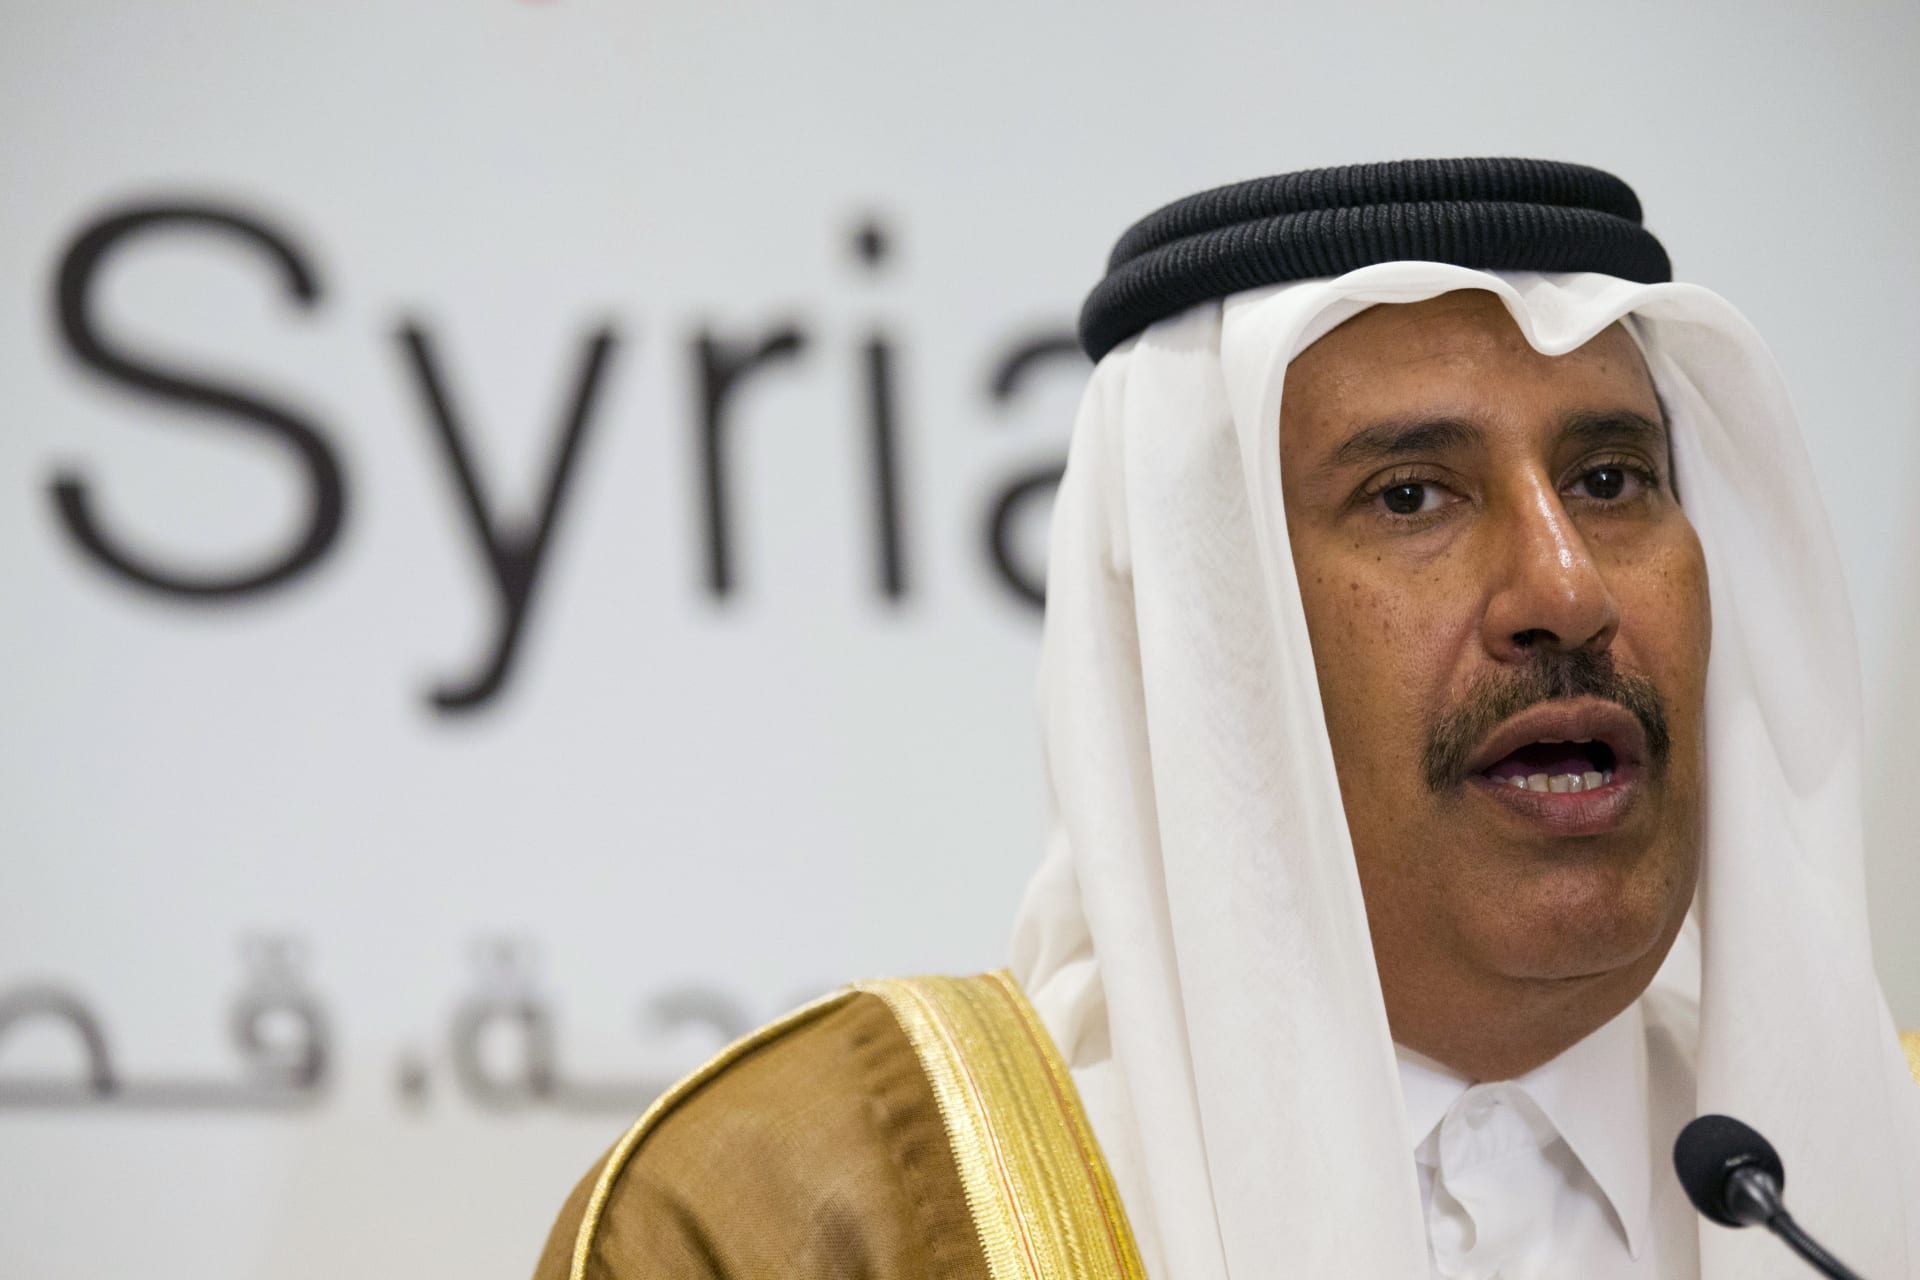 حمد بن جاسم يصف مجلس التعاون الخليجي بـ"البوق الإعلامي": فوائده إصدار بيانات